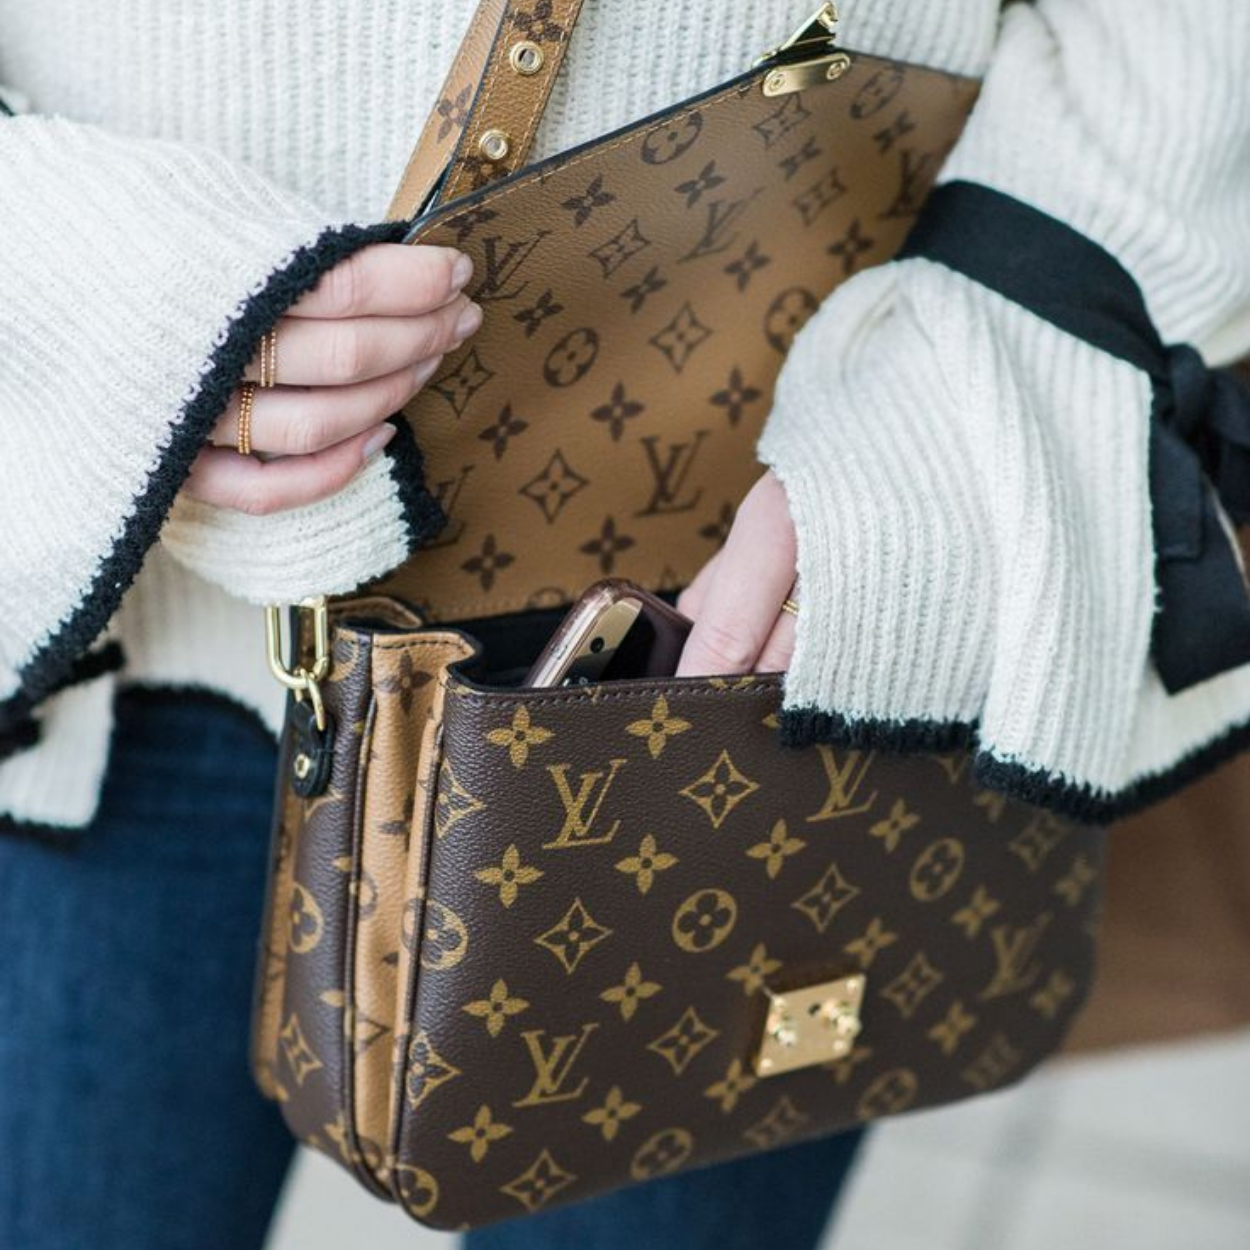 Uma bolsa original Louis Vuitton deve ter costura perfeita